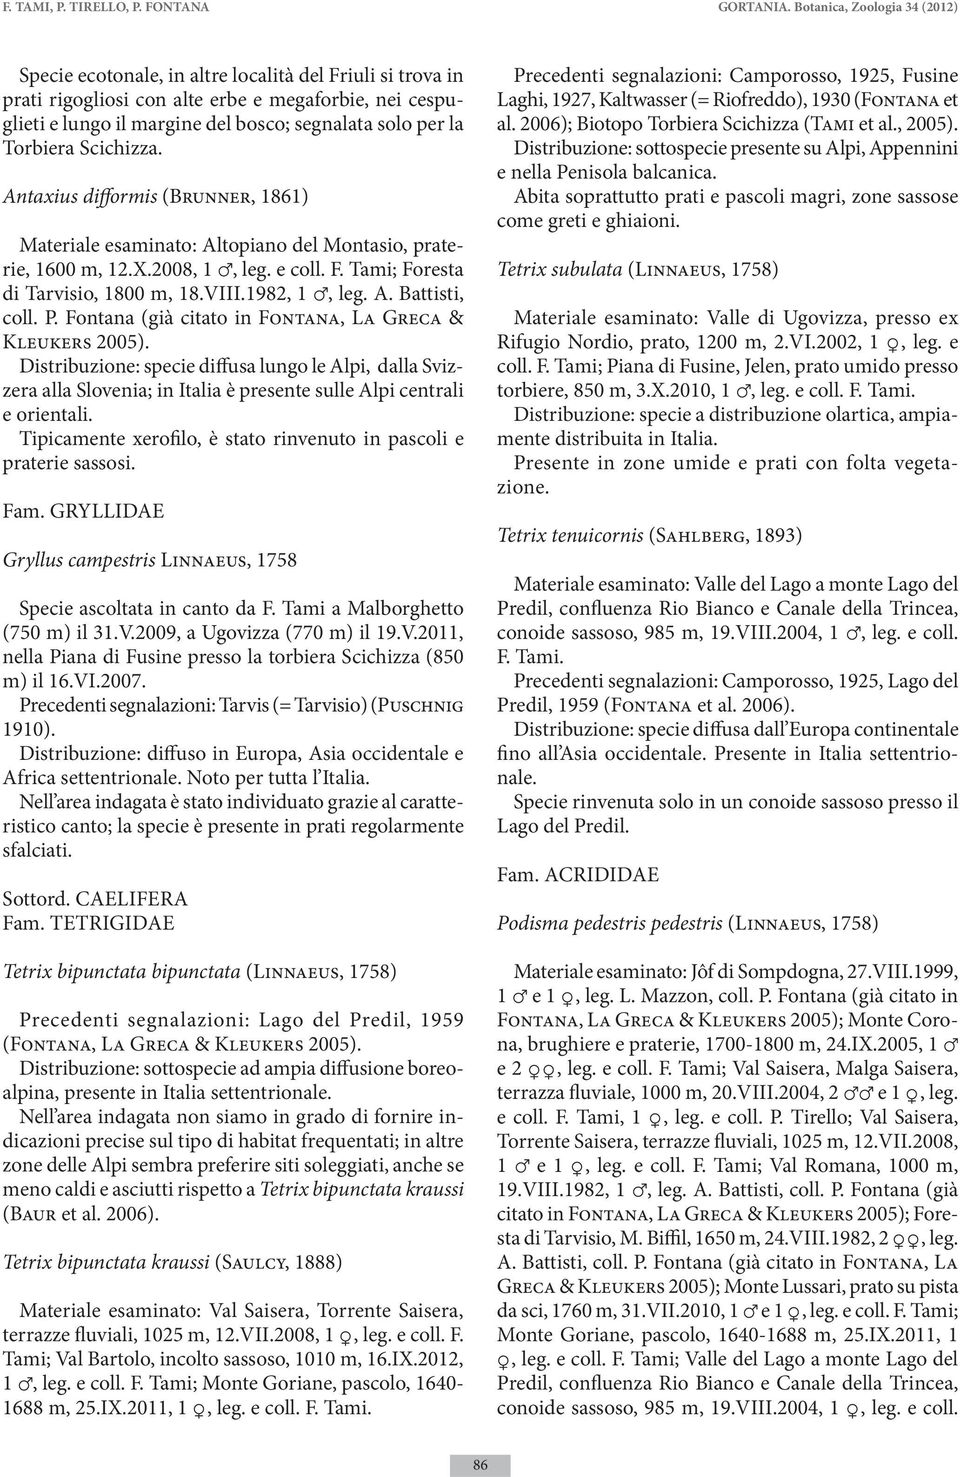 la Torbiera Scichizza. Antaxius difformis (Brunner, 1861) Materiale esaminato: Altopiano del Montasio, praterie, 1600 m, 12.X.2008, 1, leg. e coll. F. Tami; Foresta di Tarvisio, 1800 m, 18.VIII.